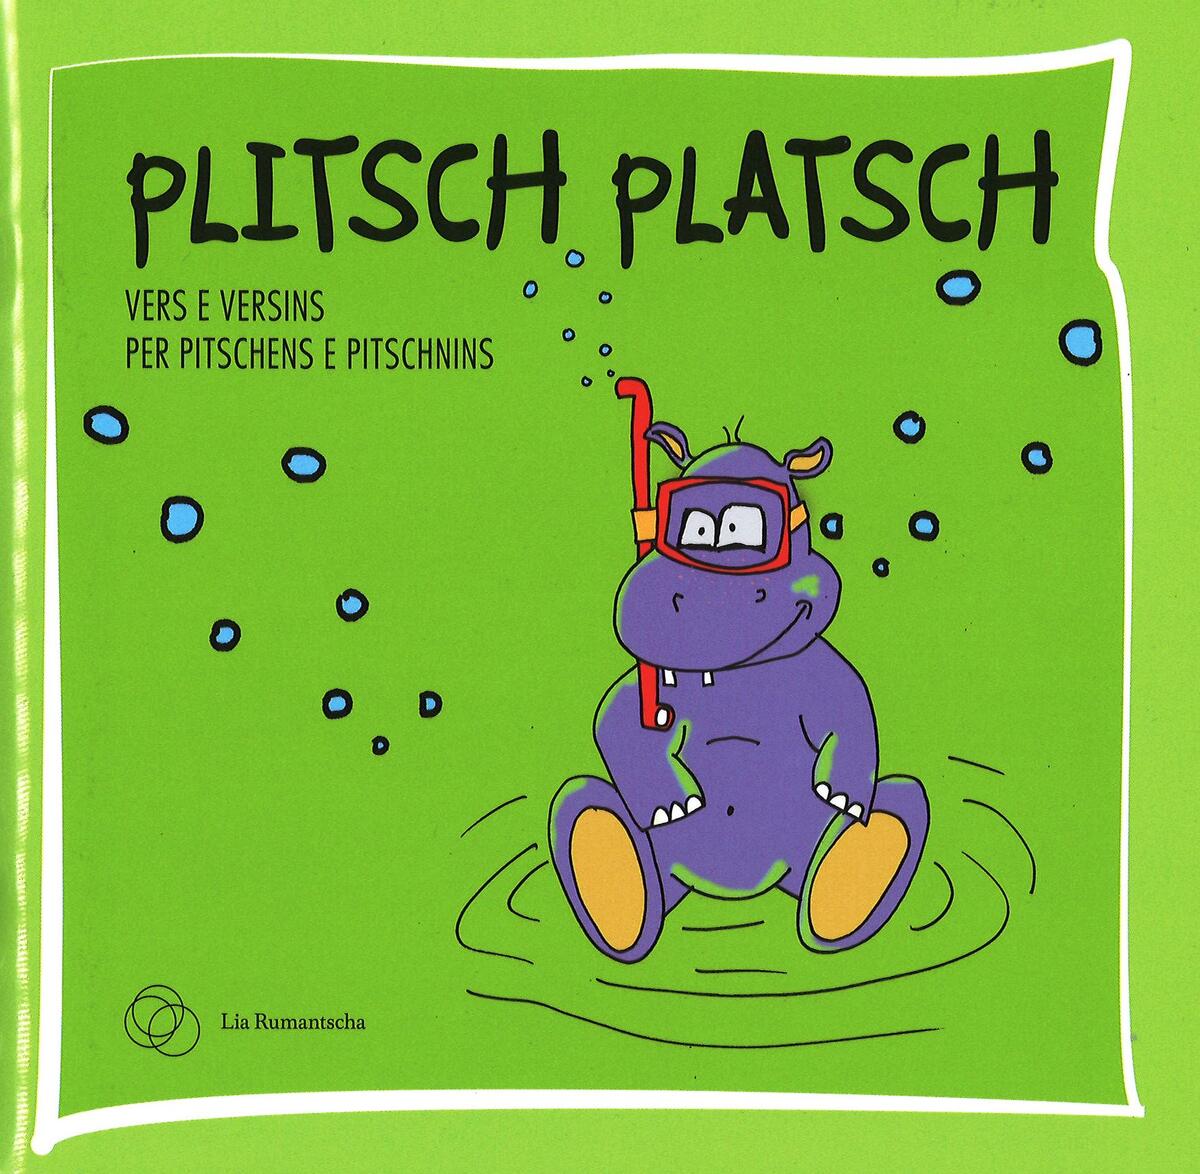 Plitsch Platsch - vers e versins